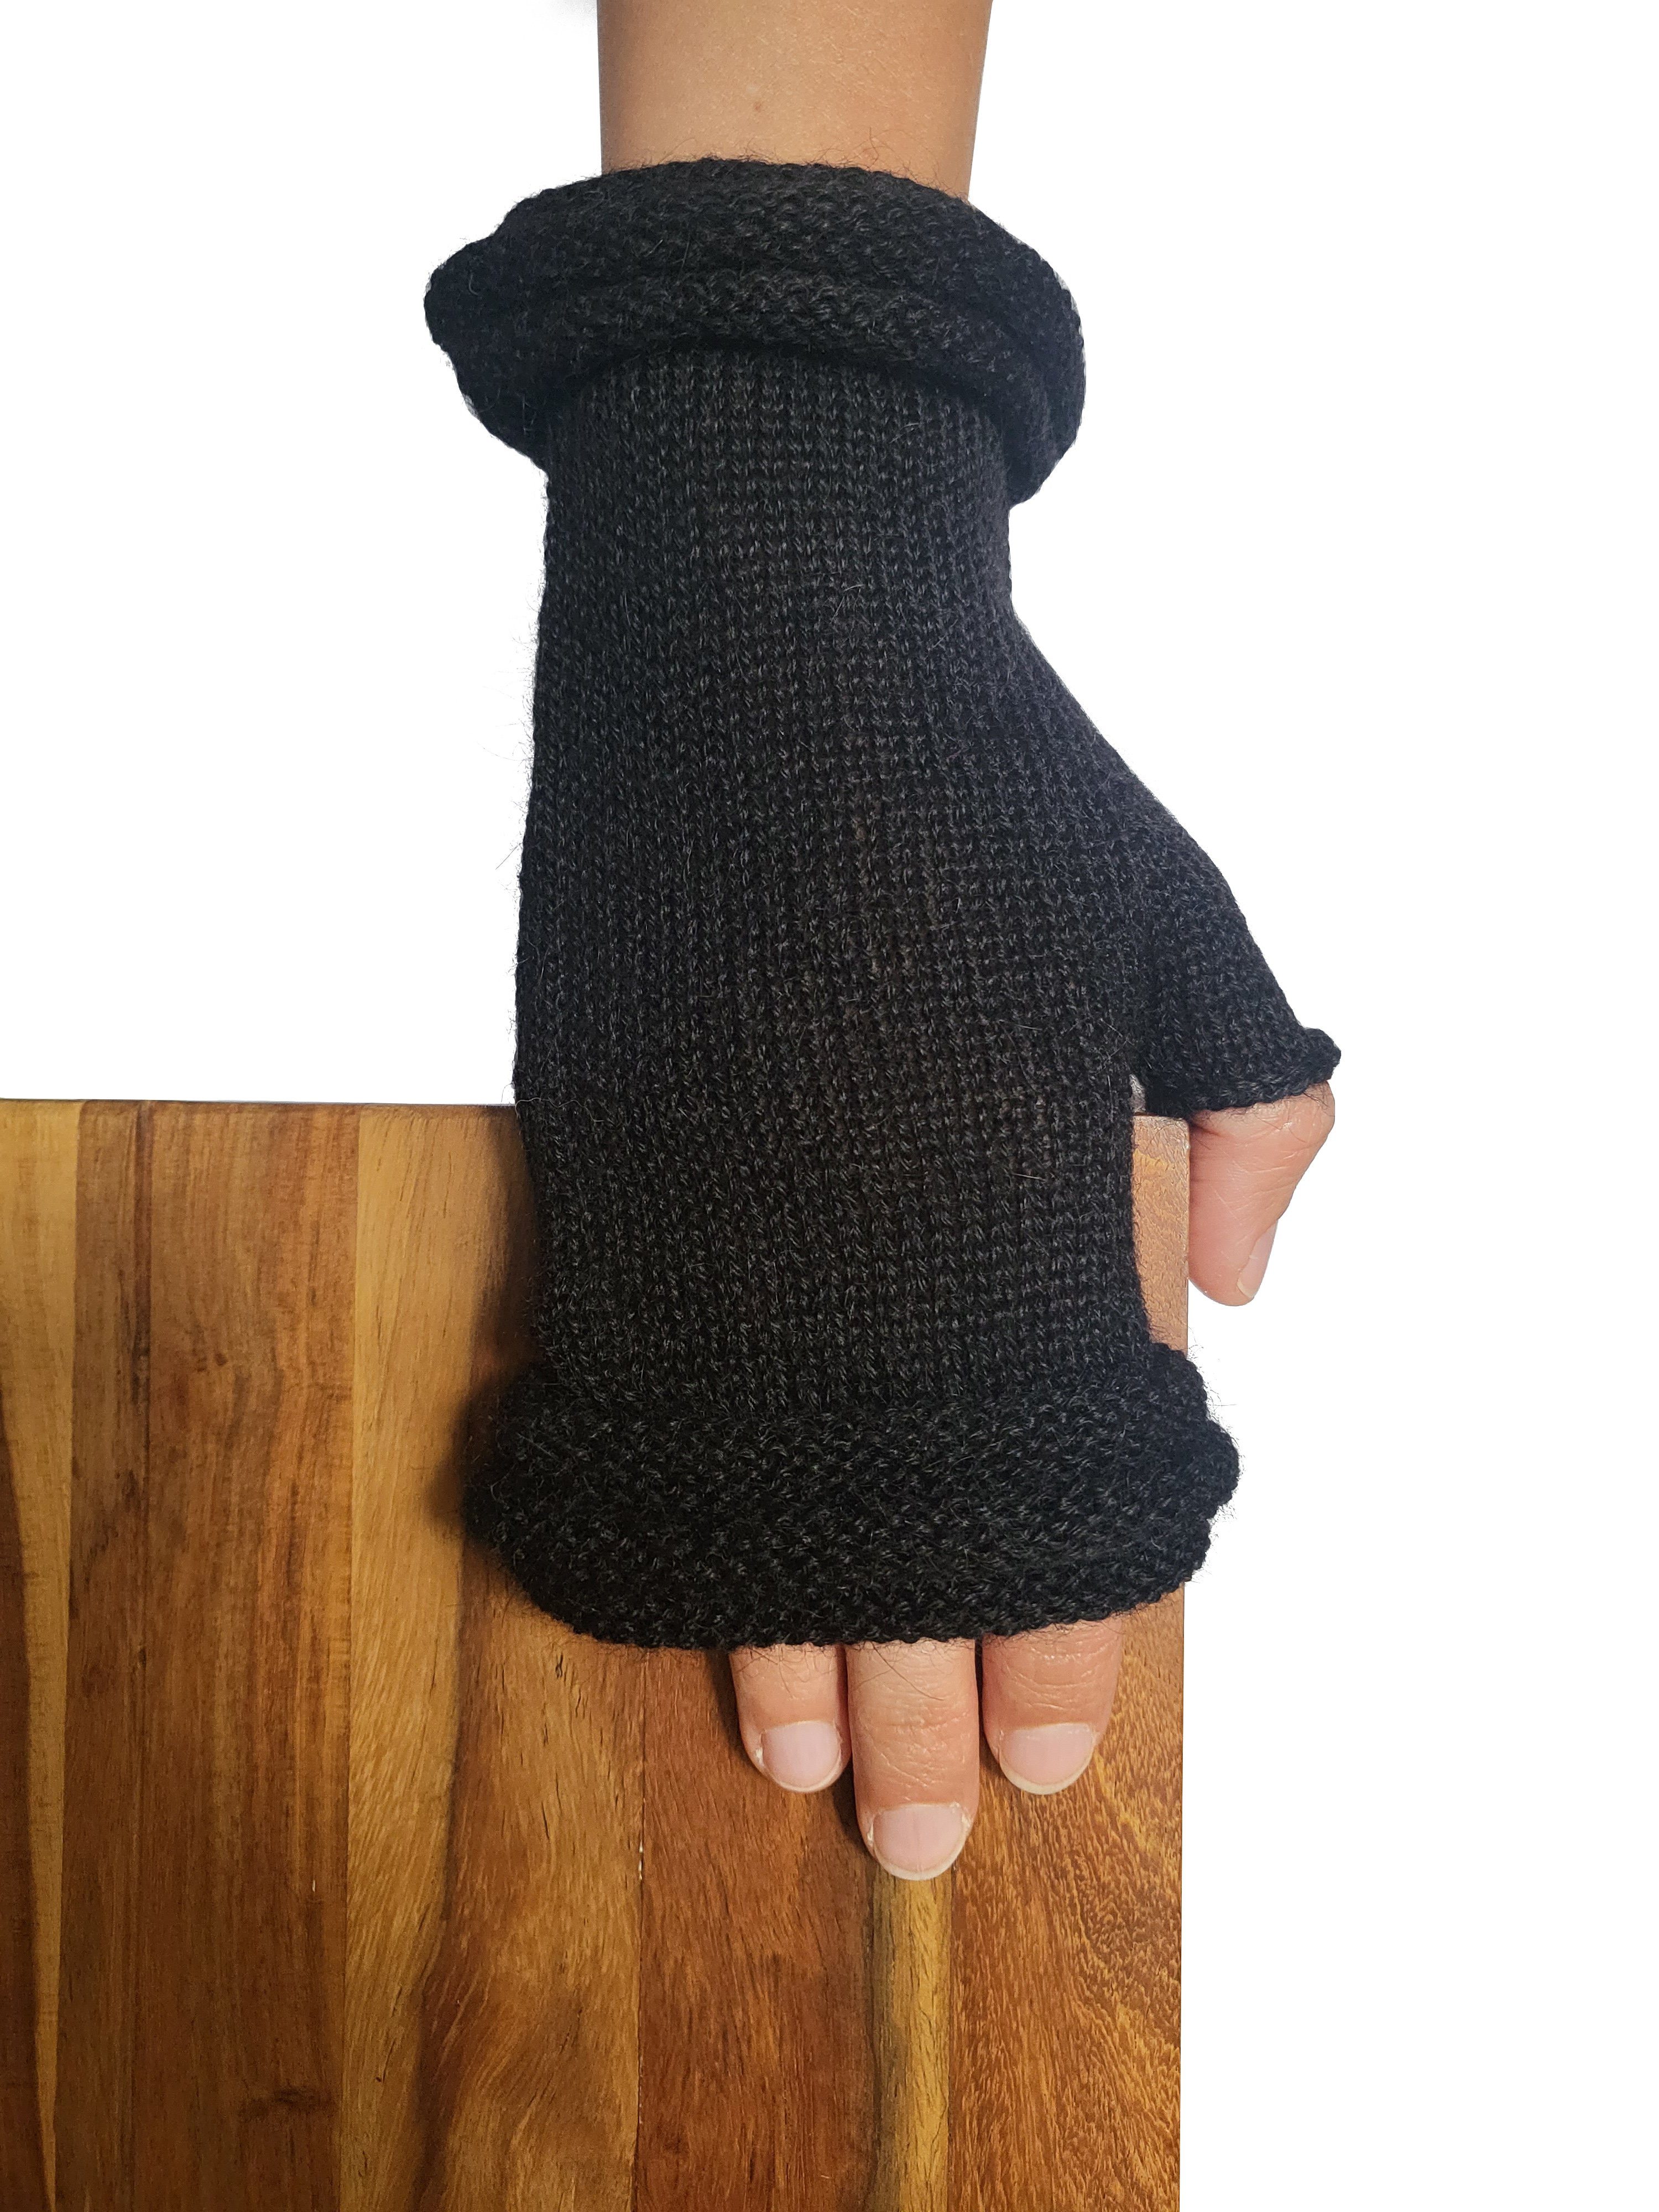 Damen 100% Alpakawolle Fäustlinge Handschuhe schwarz Posh Alpaka Storiguanti Gear Herren aus